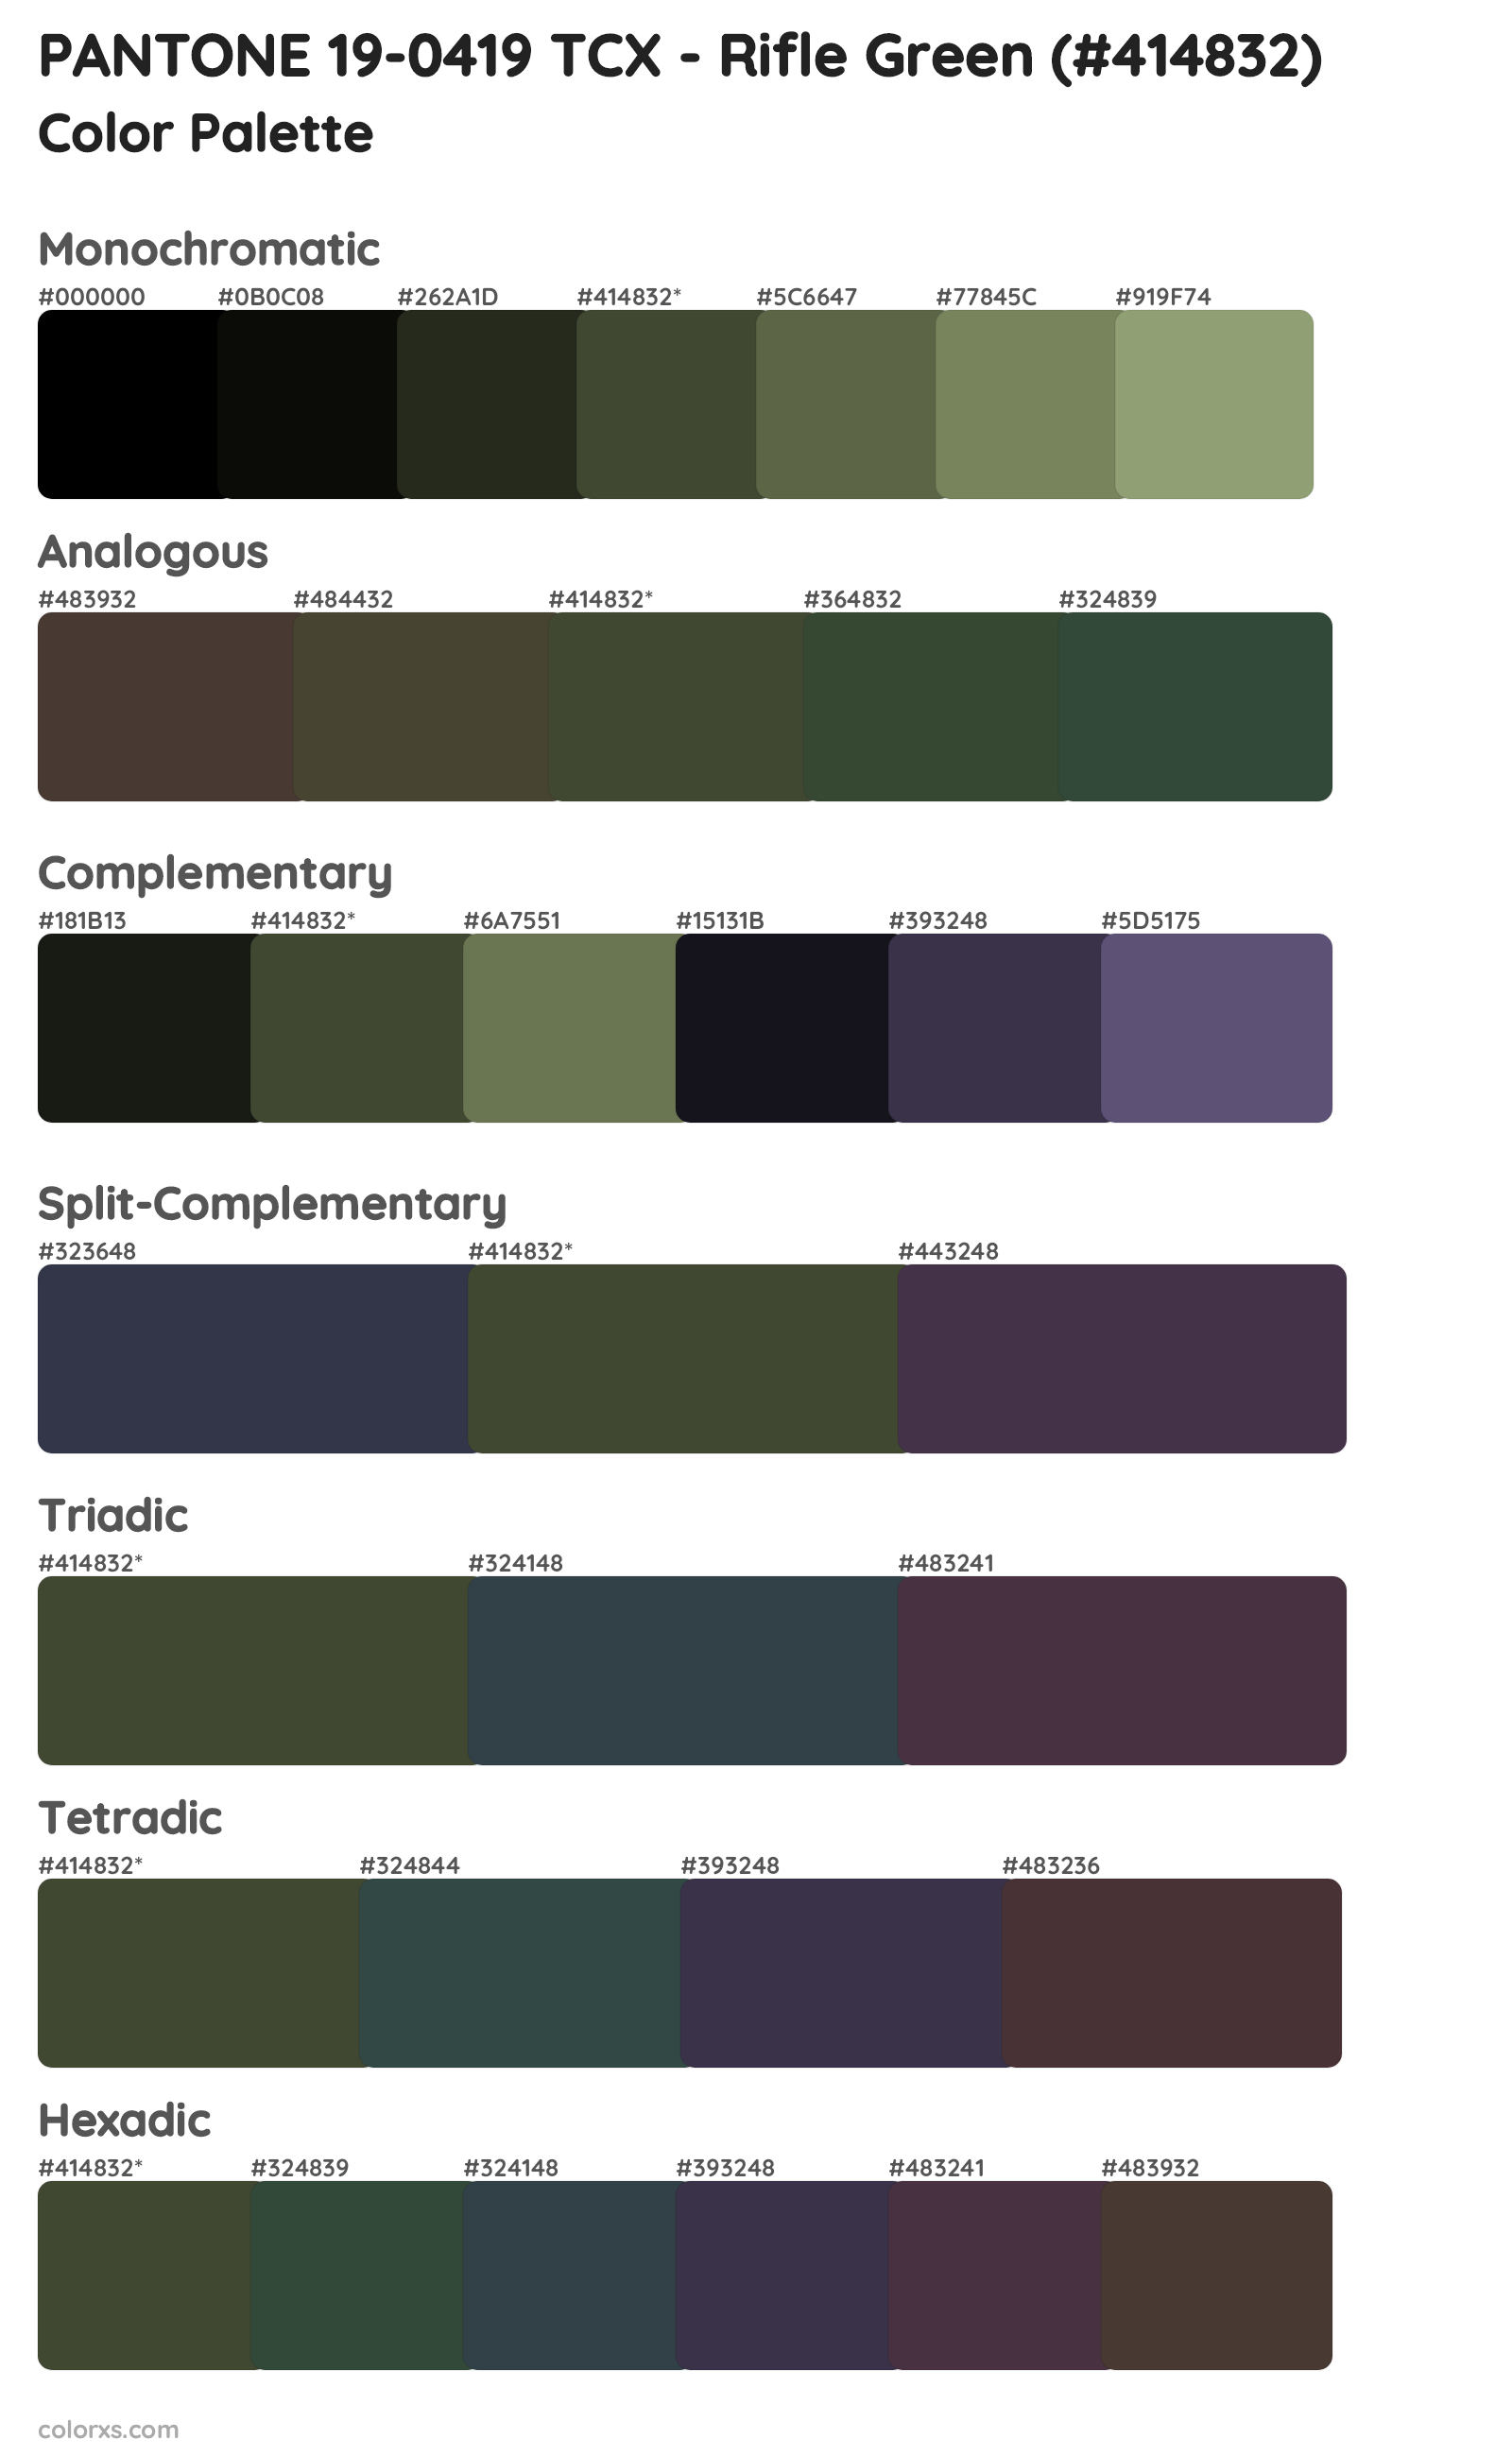 PANTONE 19-0419 TCX - Rifle Green Color Scheme Palettes